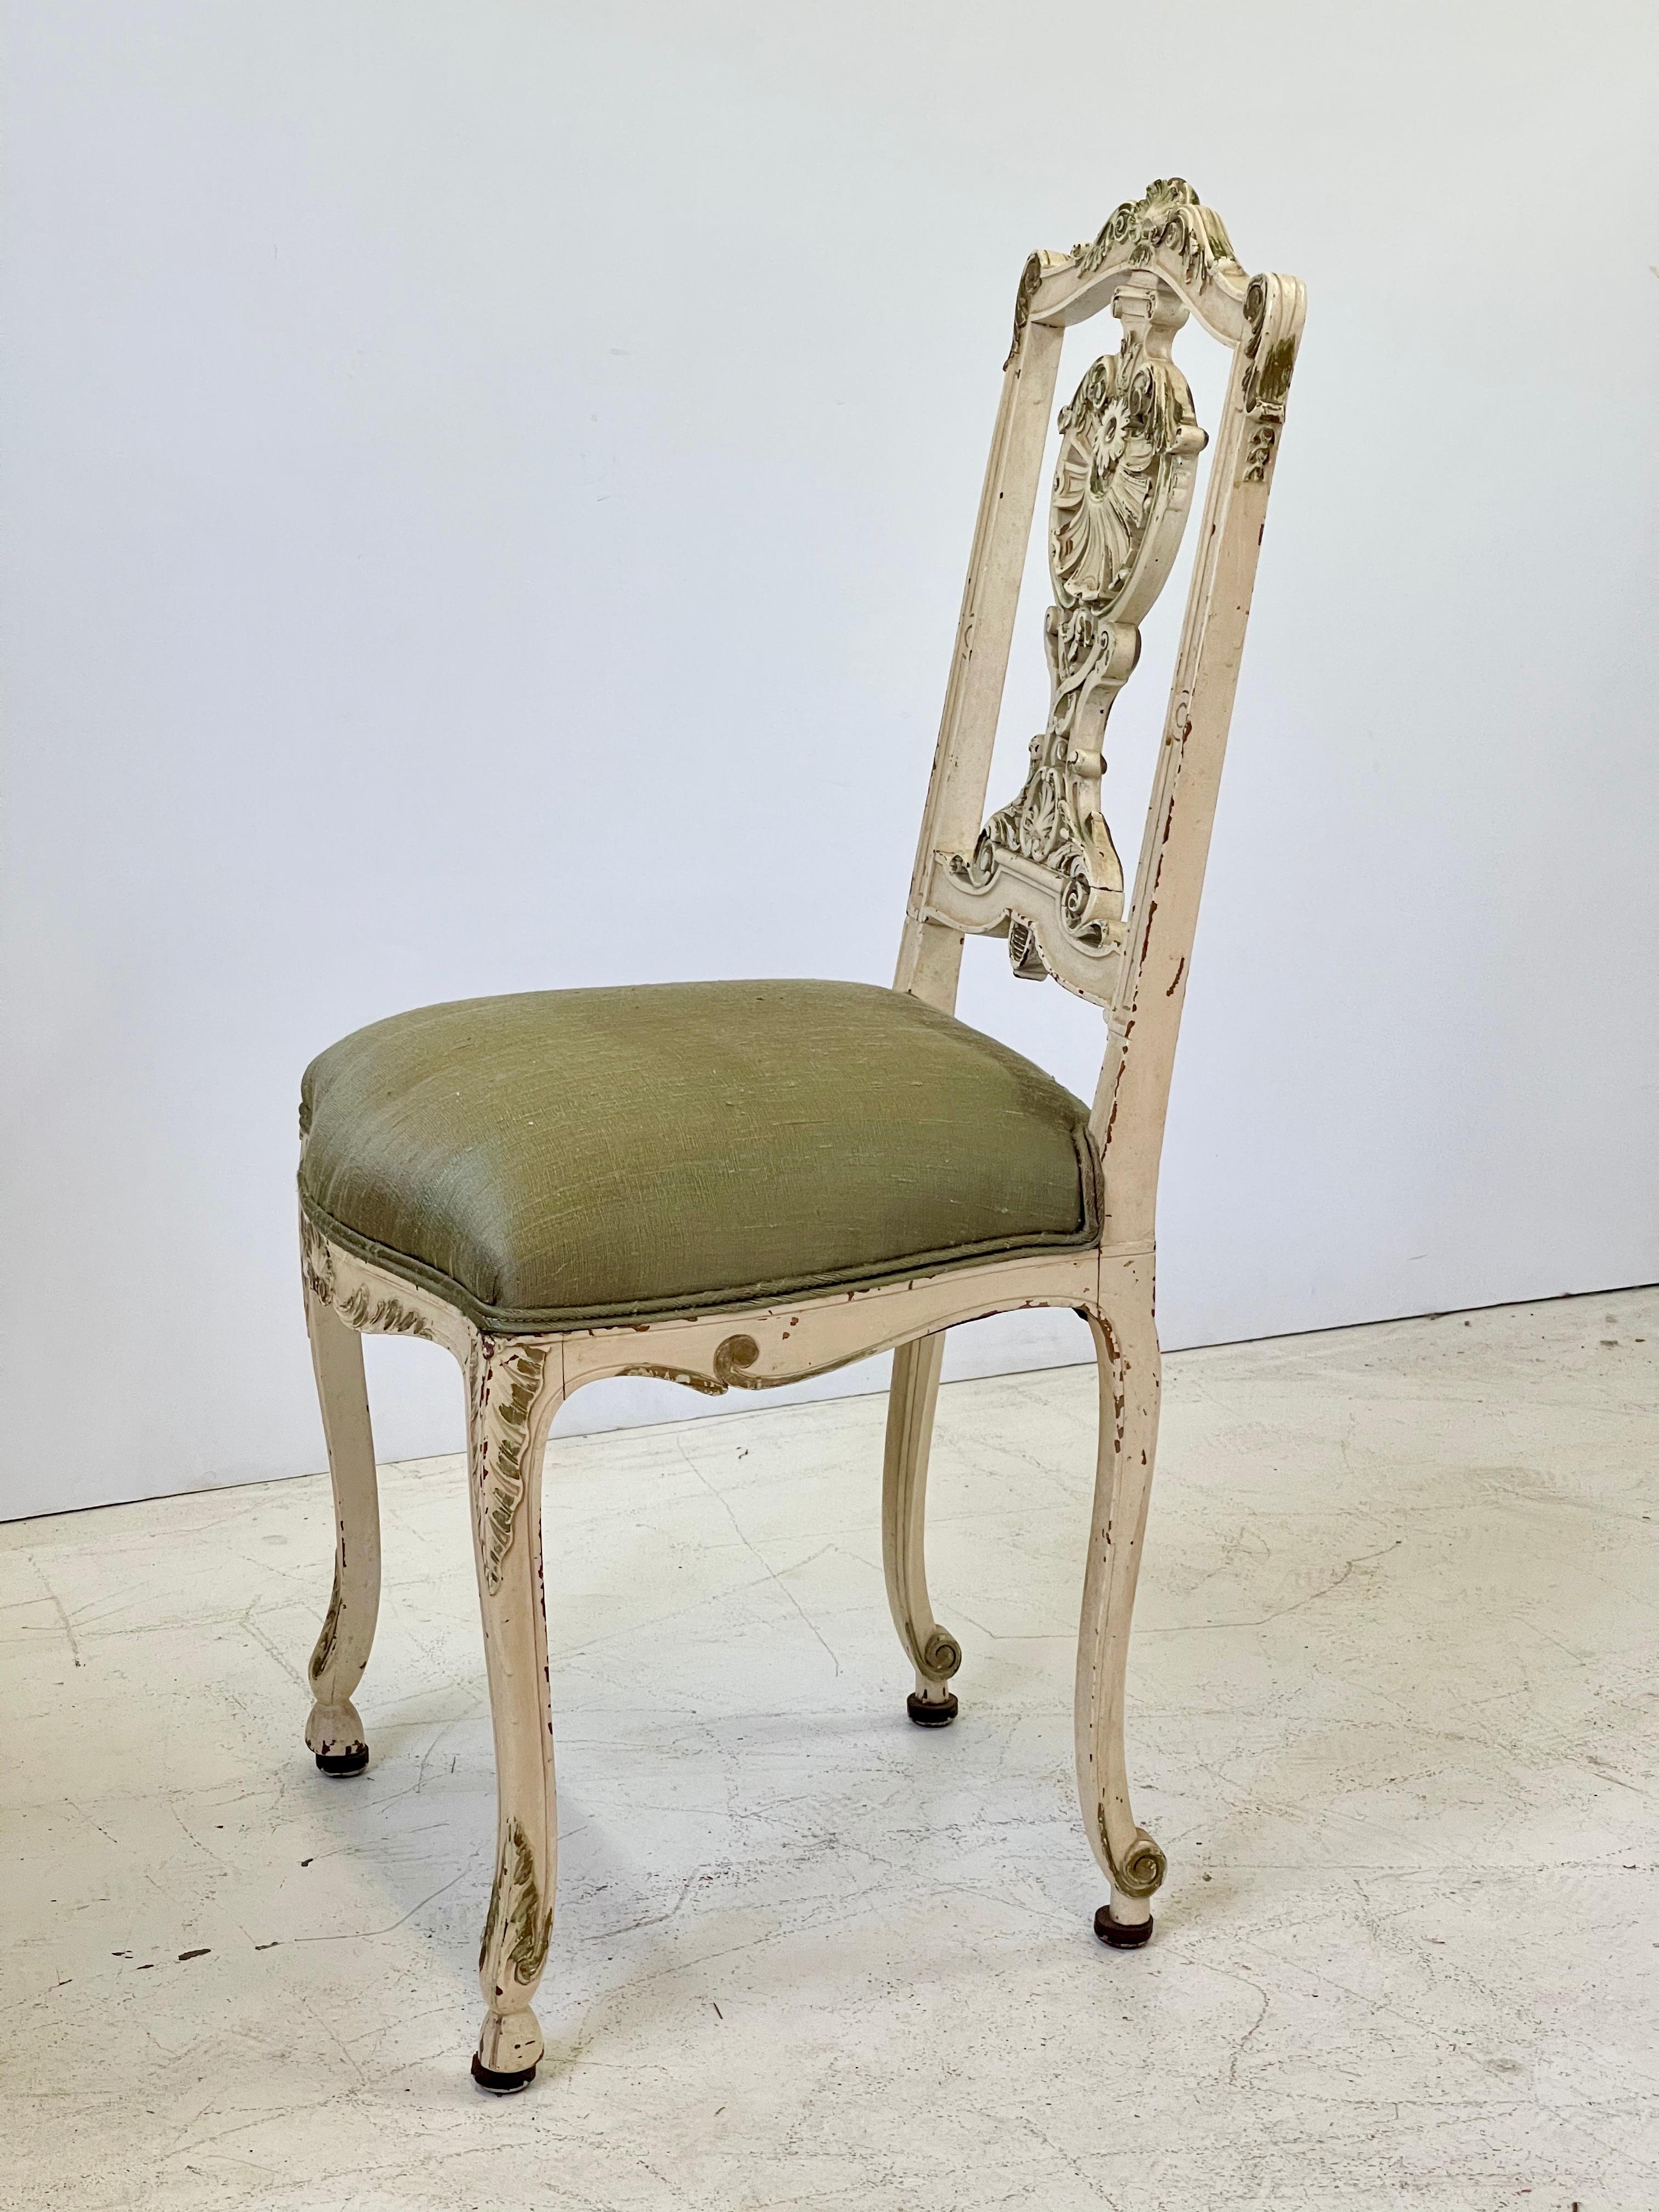 Italienischer Eitelkeitsstuhl oder kleiner Beistellstuhl aus dem frühen 20. Jahrhundert, fein geschnitzt im Stil Louis XV. Der Stuhl ist cremefarben lackiert mit vergoldeten Details, die sich im Laufe der Zeit schön abgenutzt haben. Der Sitz wurde